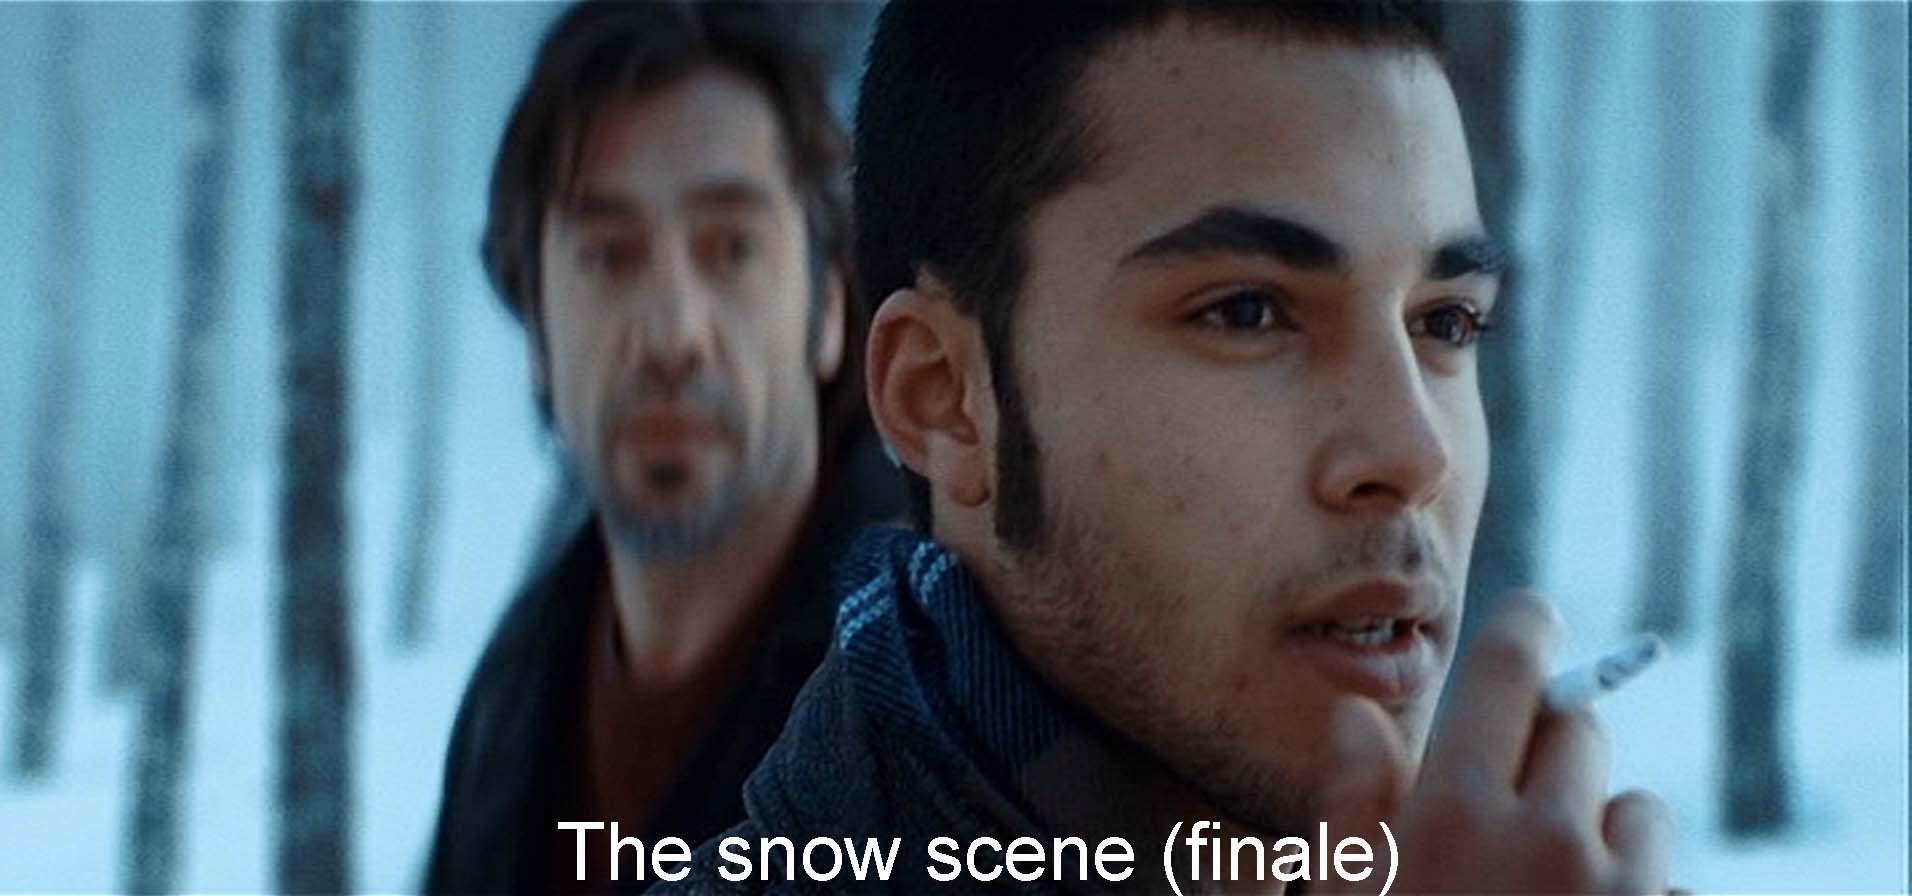 The snow scene (finale)